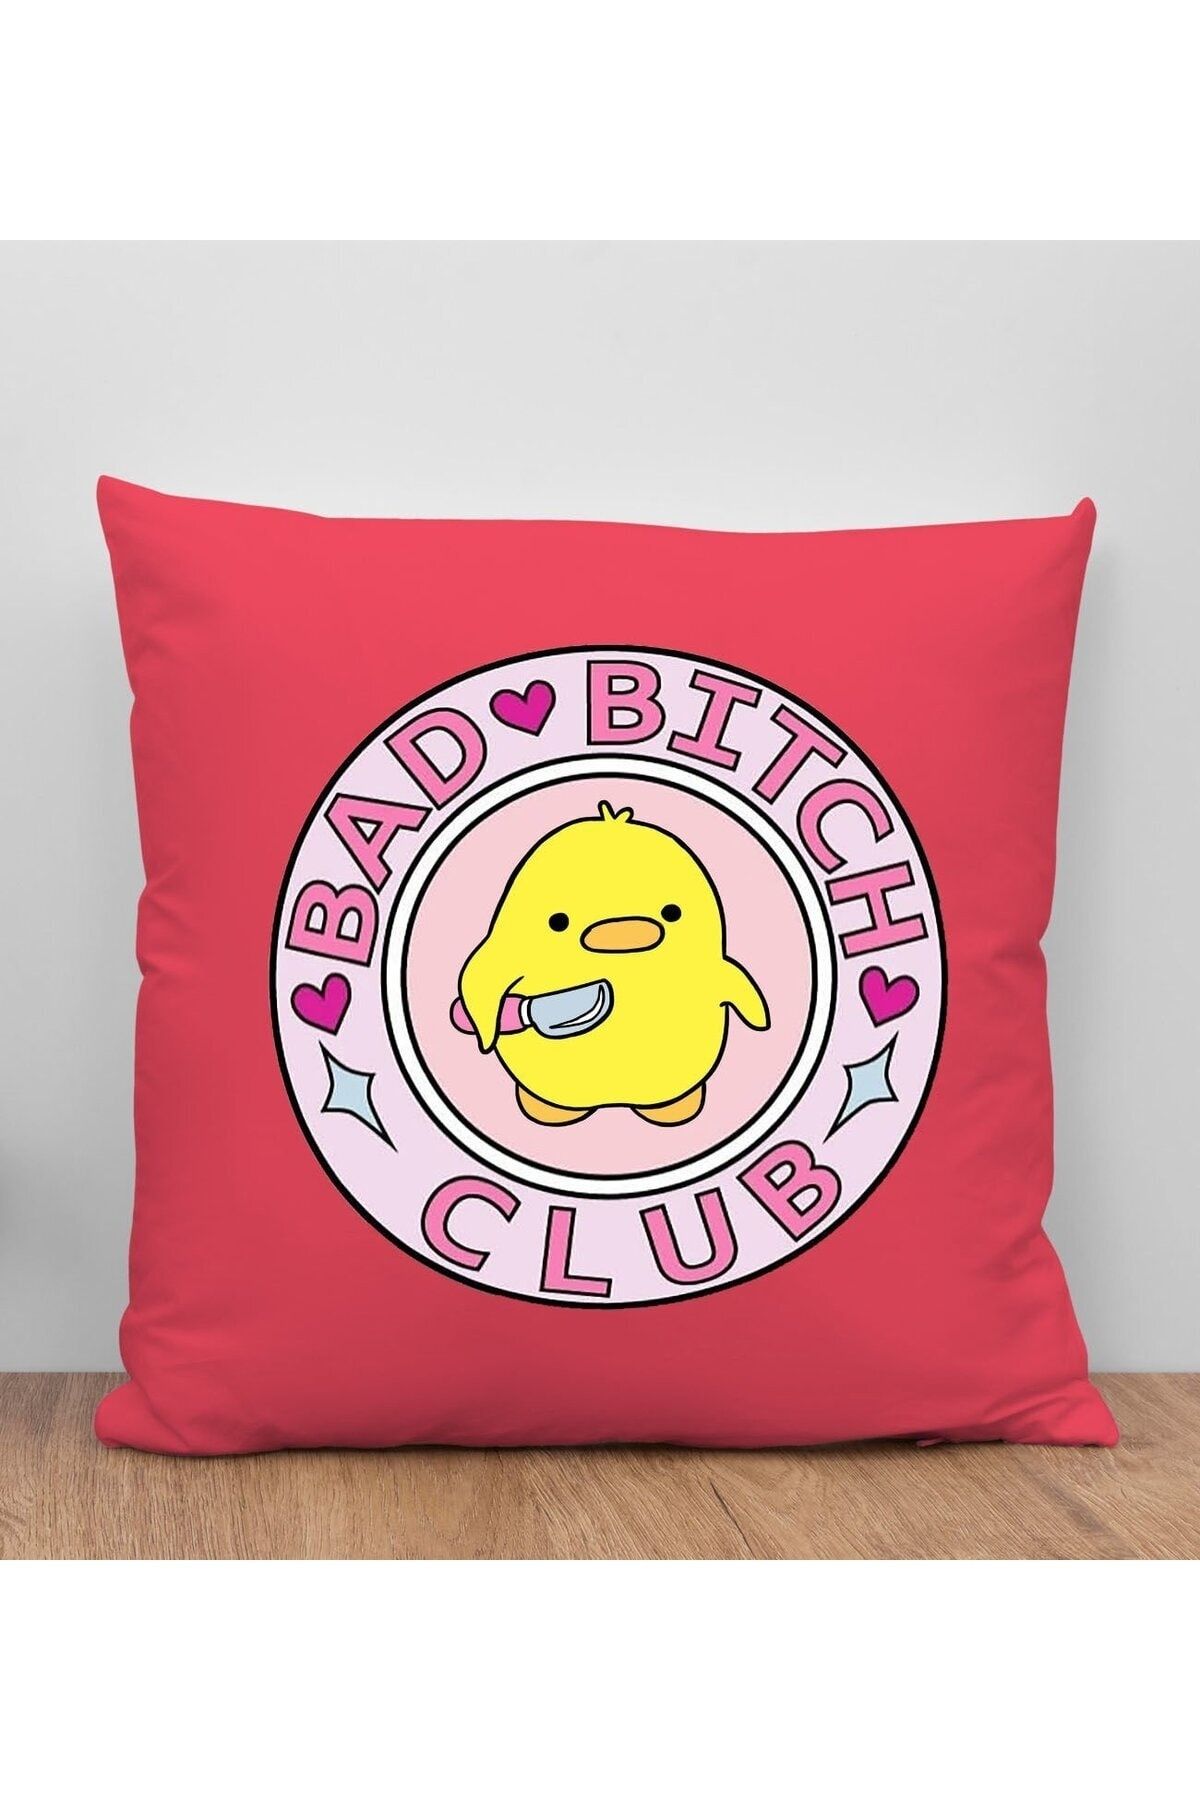 Bk Gift Bad Bitch Club Tasarımlı Kırmızı Kırlent Yastık, Arkadaşa , Ev Dekorasyonu,